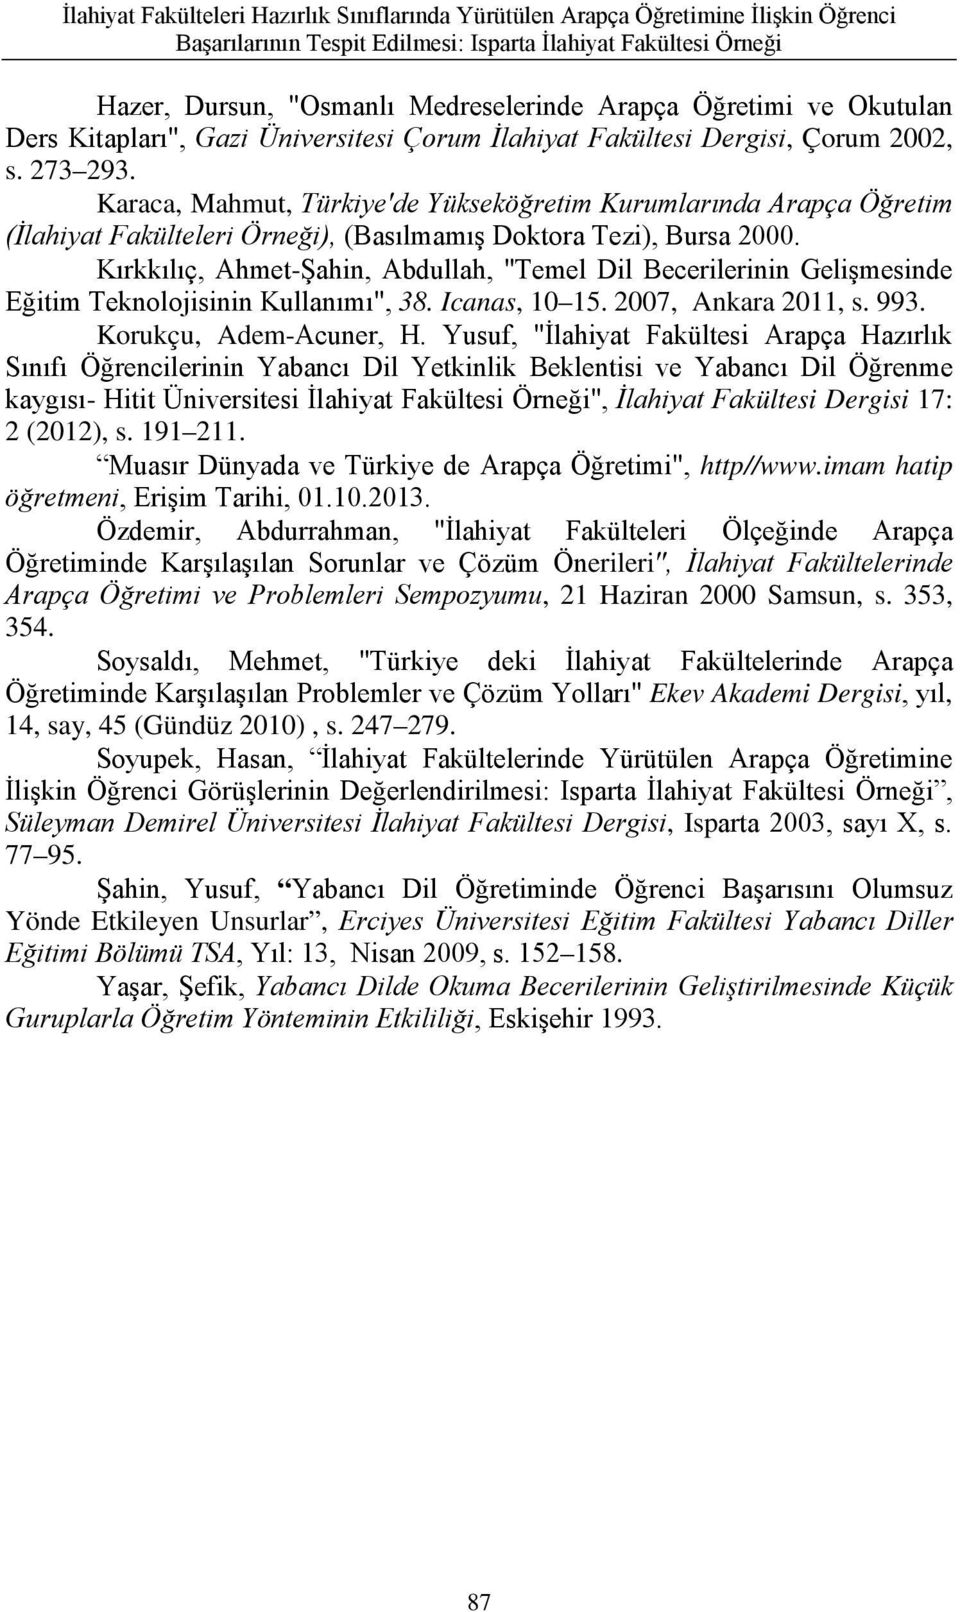 Karaca, Mahmut, Türkiye'de Yükseköğretim Kurumlarında Arapça Öğretim (İlahiyat Fakülteleri Örneği), (Basılmamış Doktora Tezi), Bursa 2000.